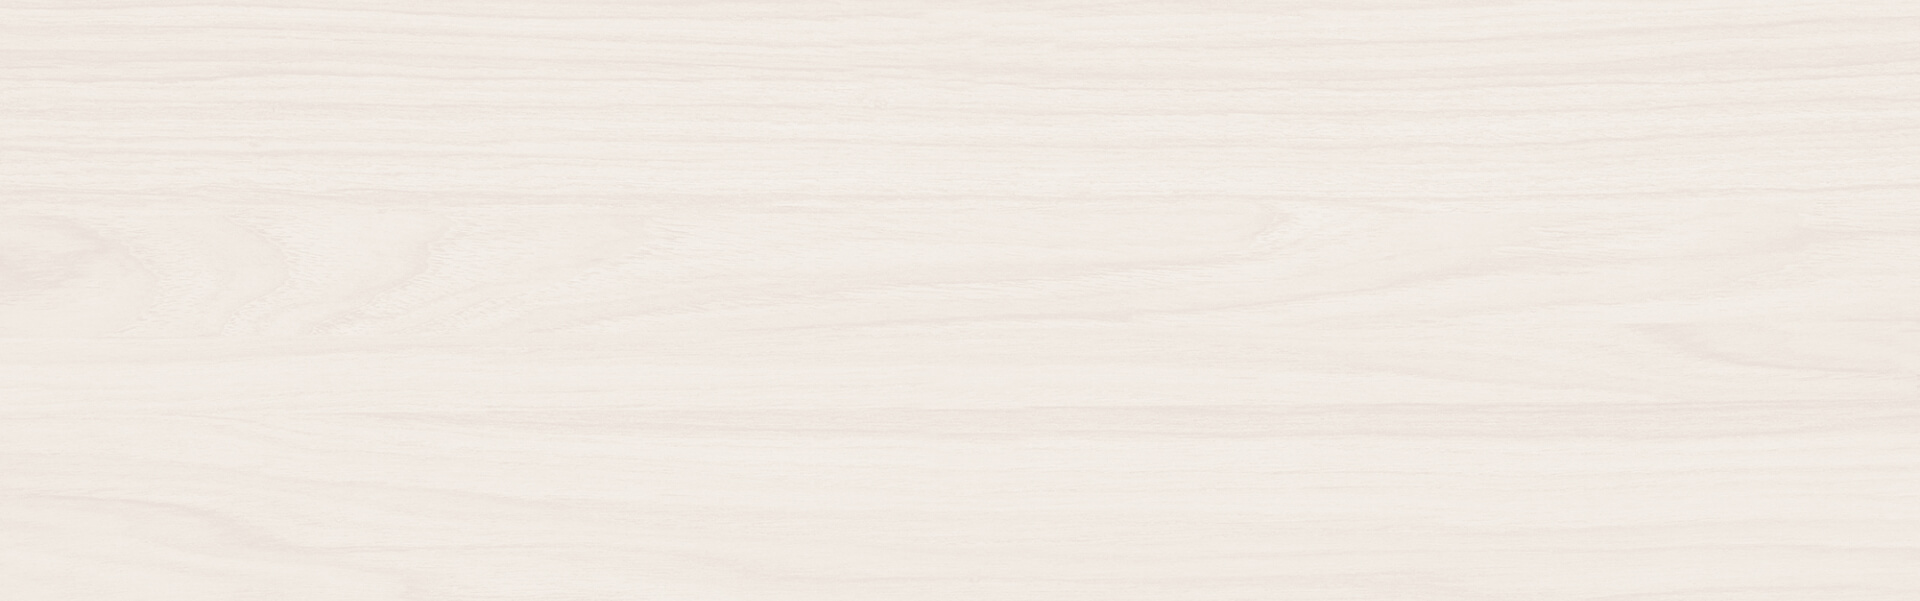 IMG_3199 - Rajnochovice - Bílová paseka